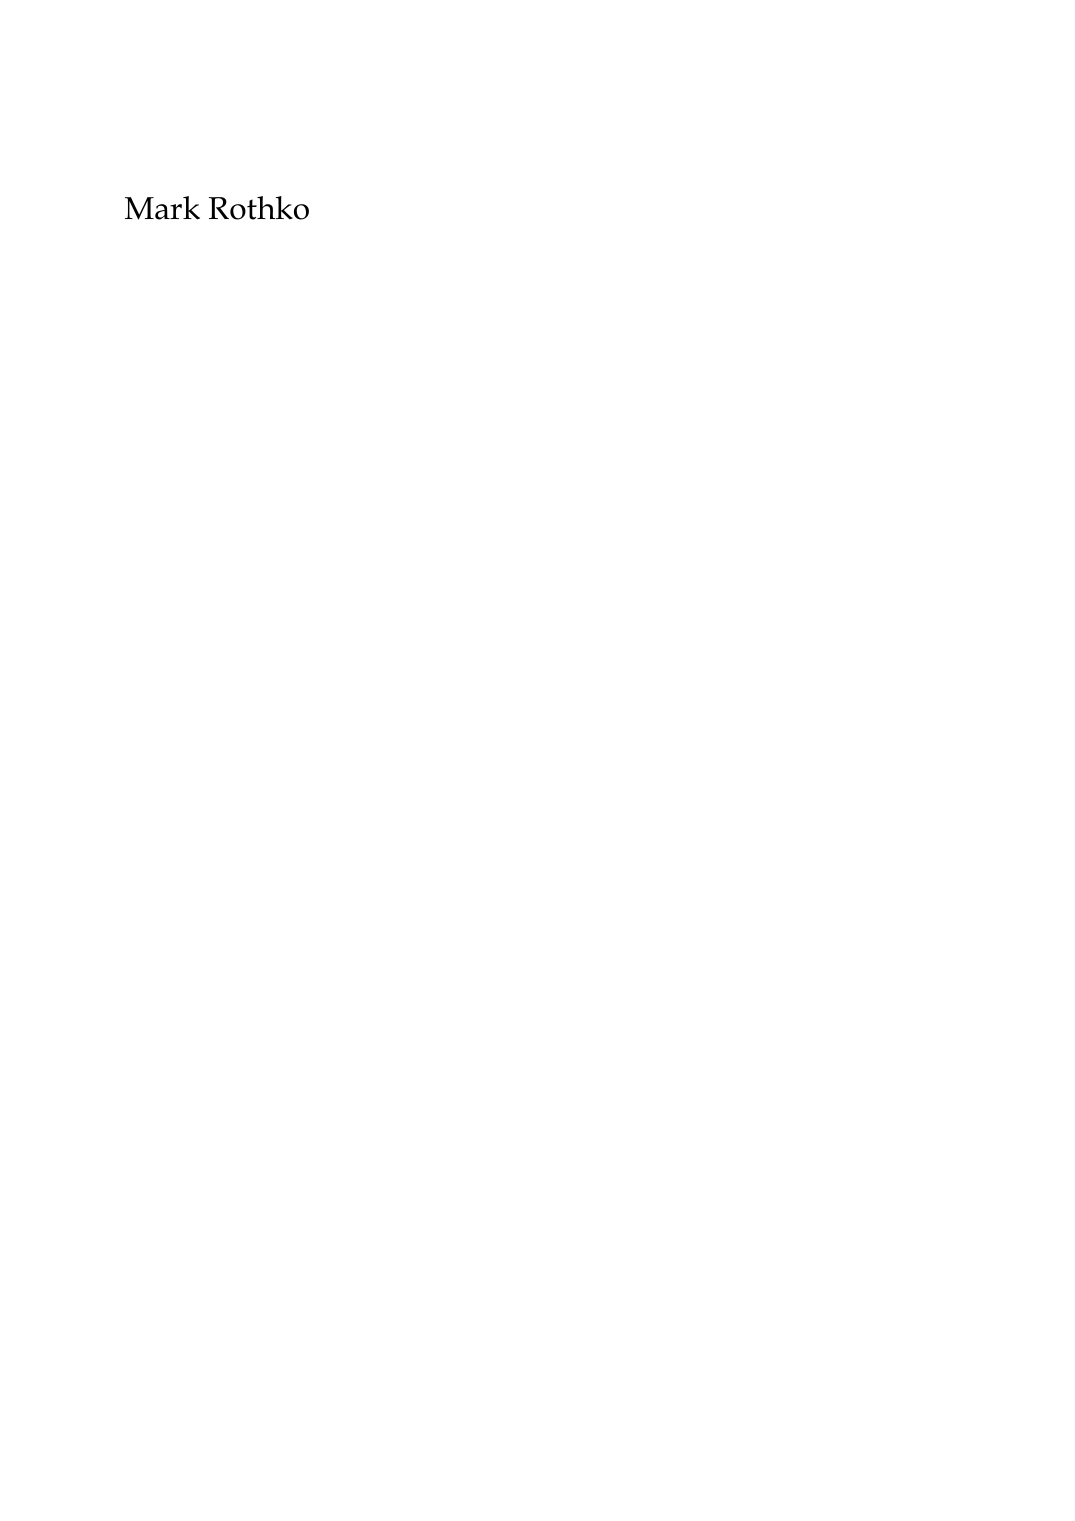 Prévisualisation du document Mark Rothko par Marie-Claude DaneConservateur Adjoint du Musée d'Art Moderne de la Ville de Paris Né à Dvinsk, en Russie, non loin de la frontière polonaise, Mark Rothkosuivra sa famille à Portland, Oregon, en 1913 et terminera ses études àl'université Yale.